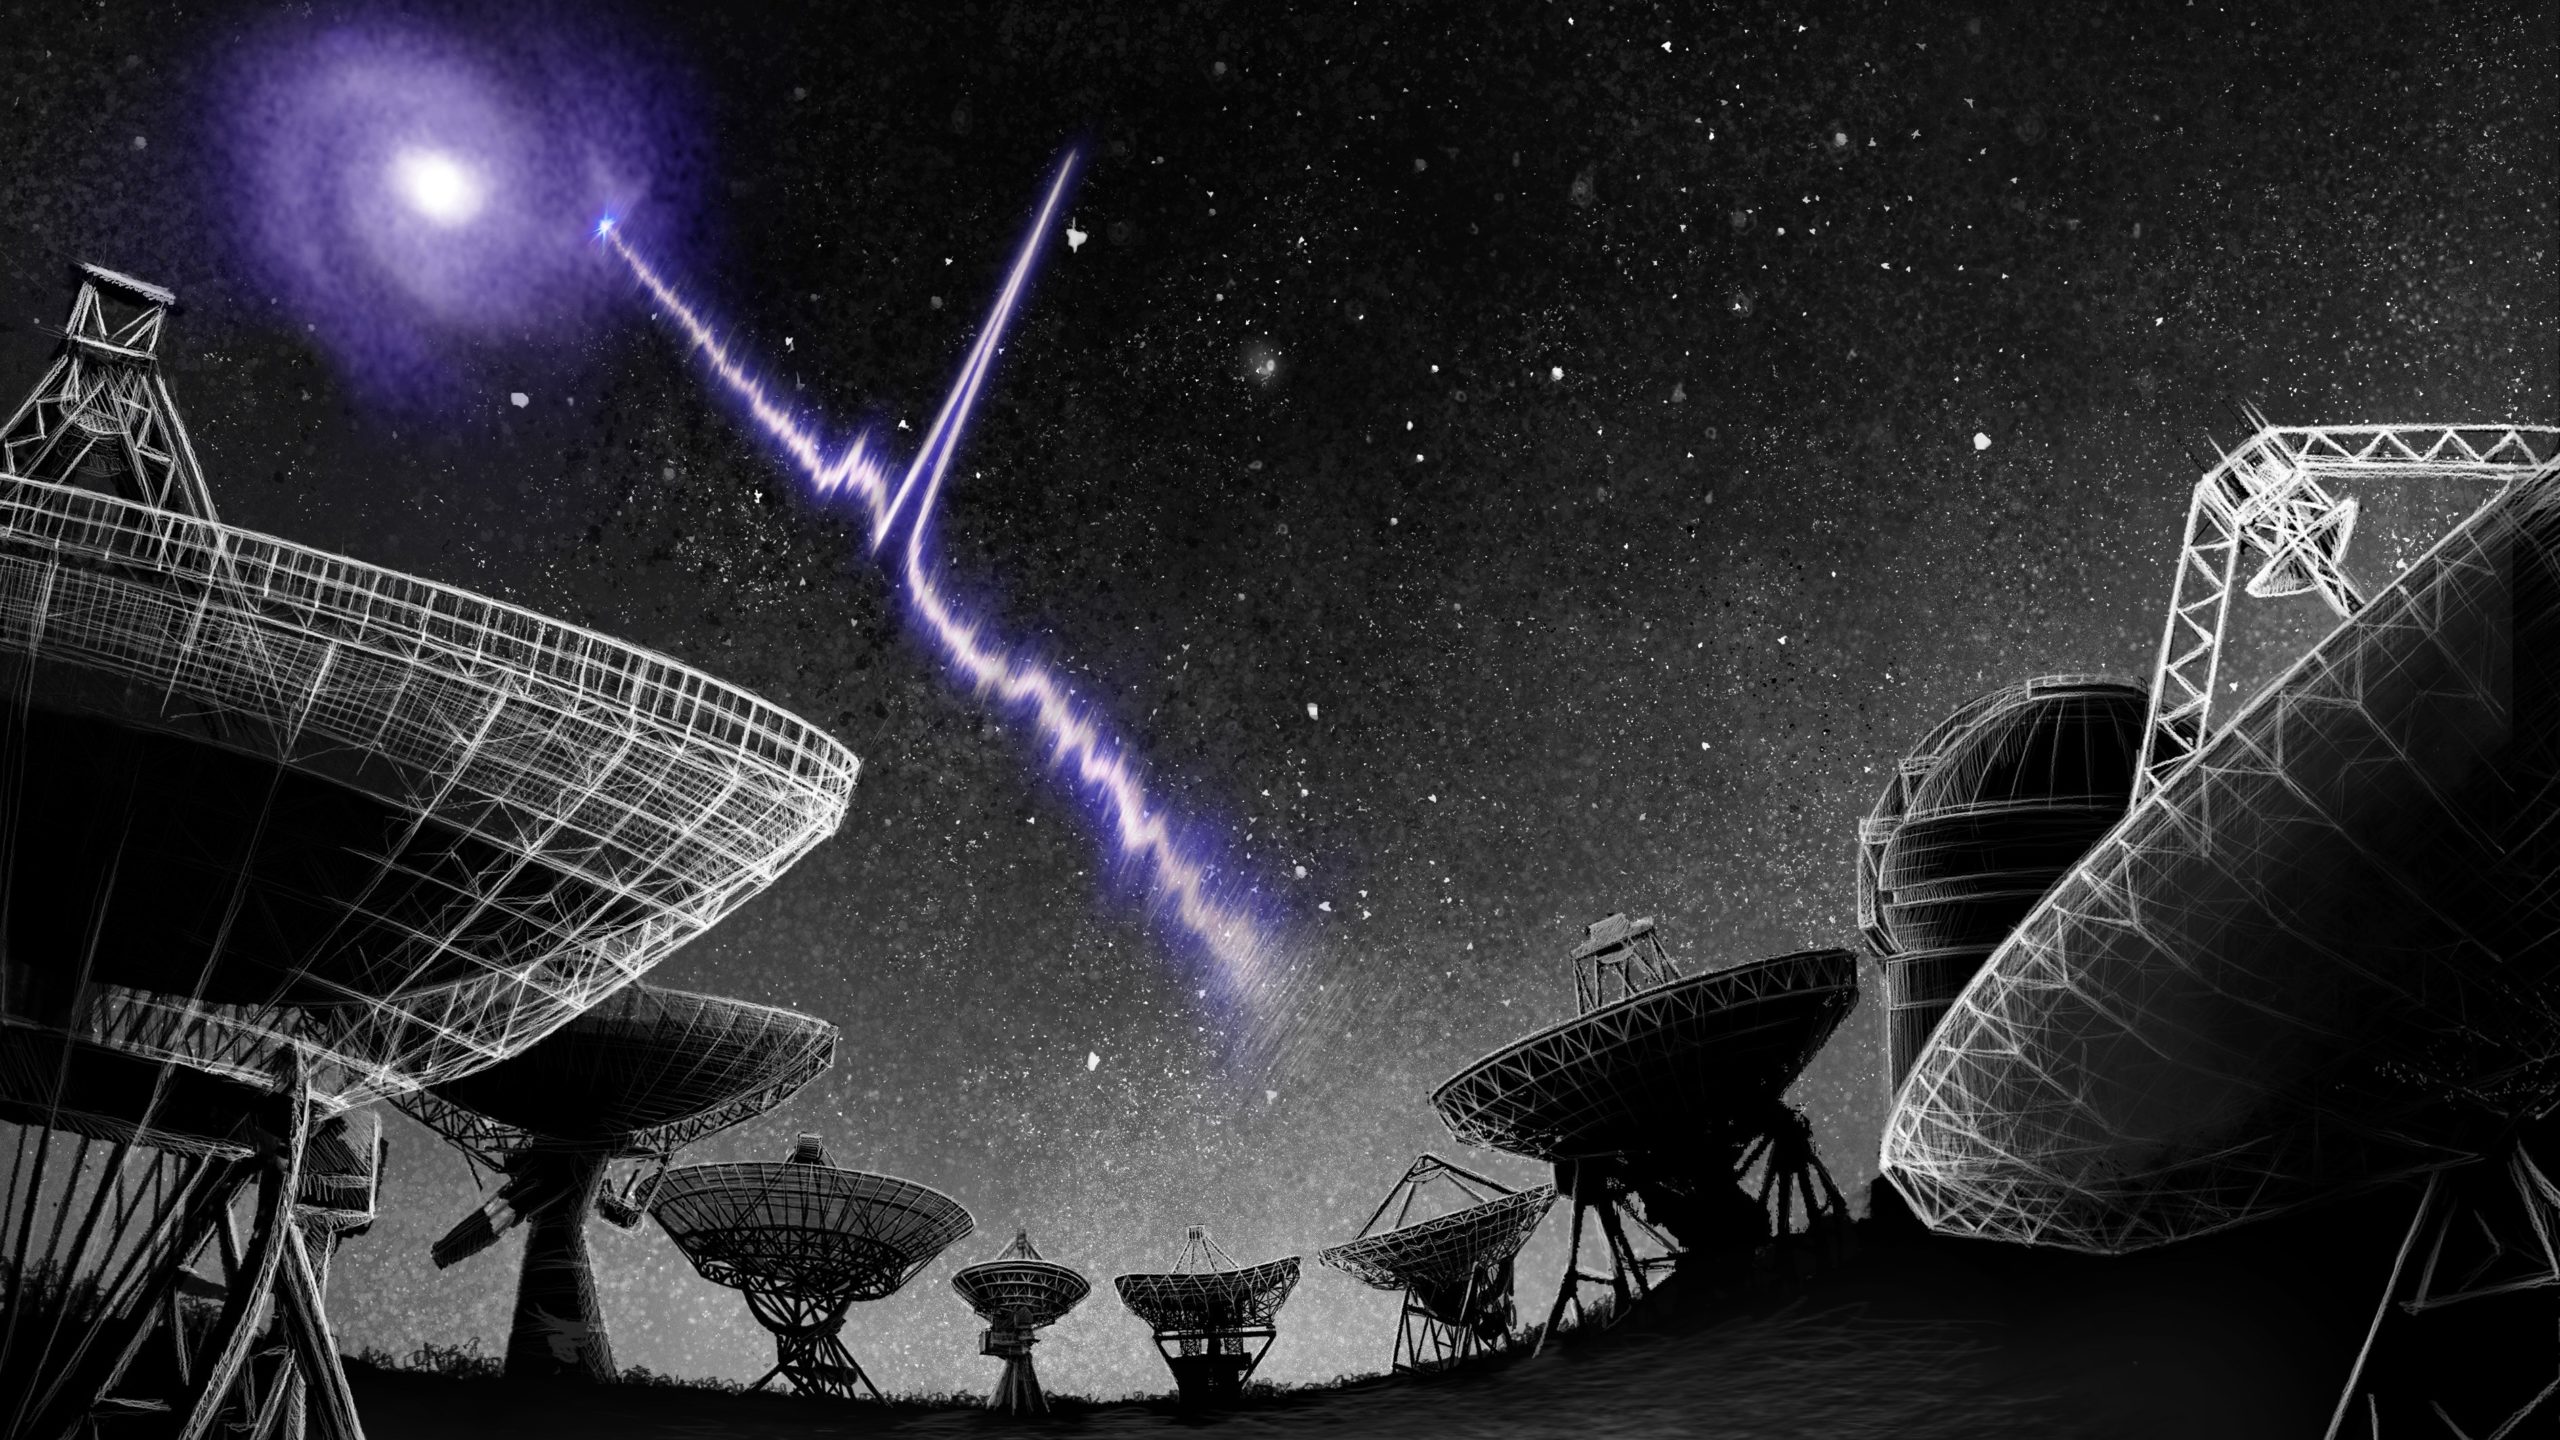 رصد أقرب تدفق راديوي من الفضاء من مكان غير متوقع - ما هي التدفقات الراديوية السريعة المتكررة FRBs التي يهتم العلماء برصدها؟